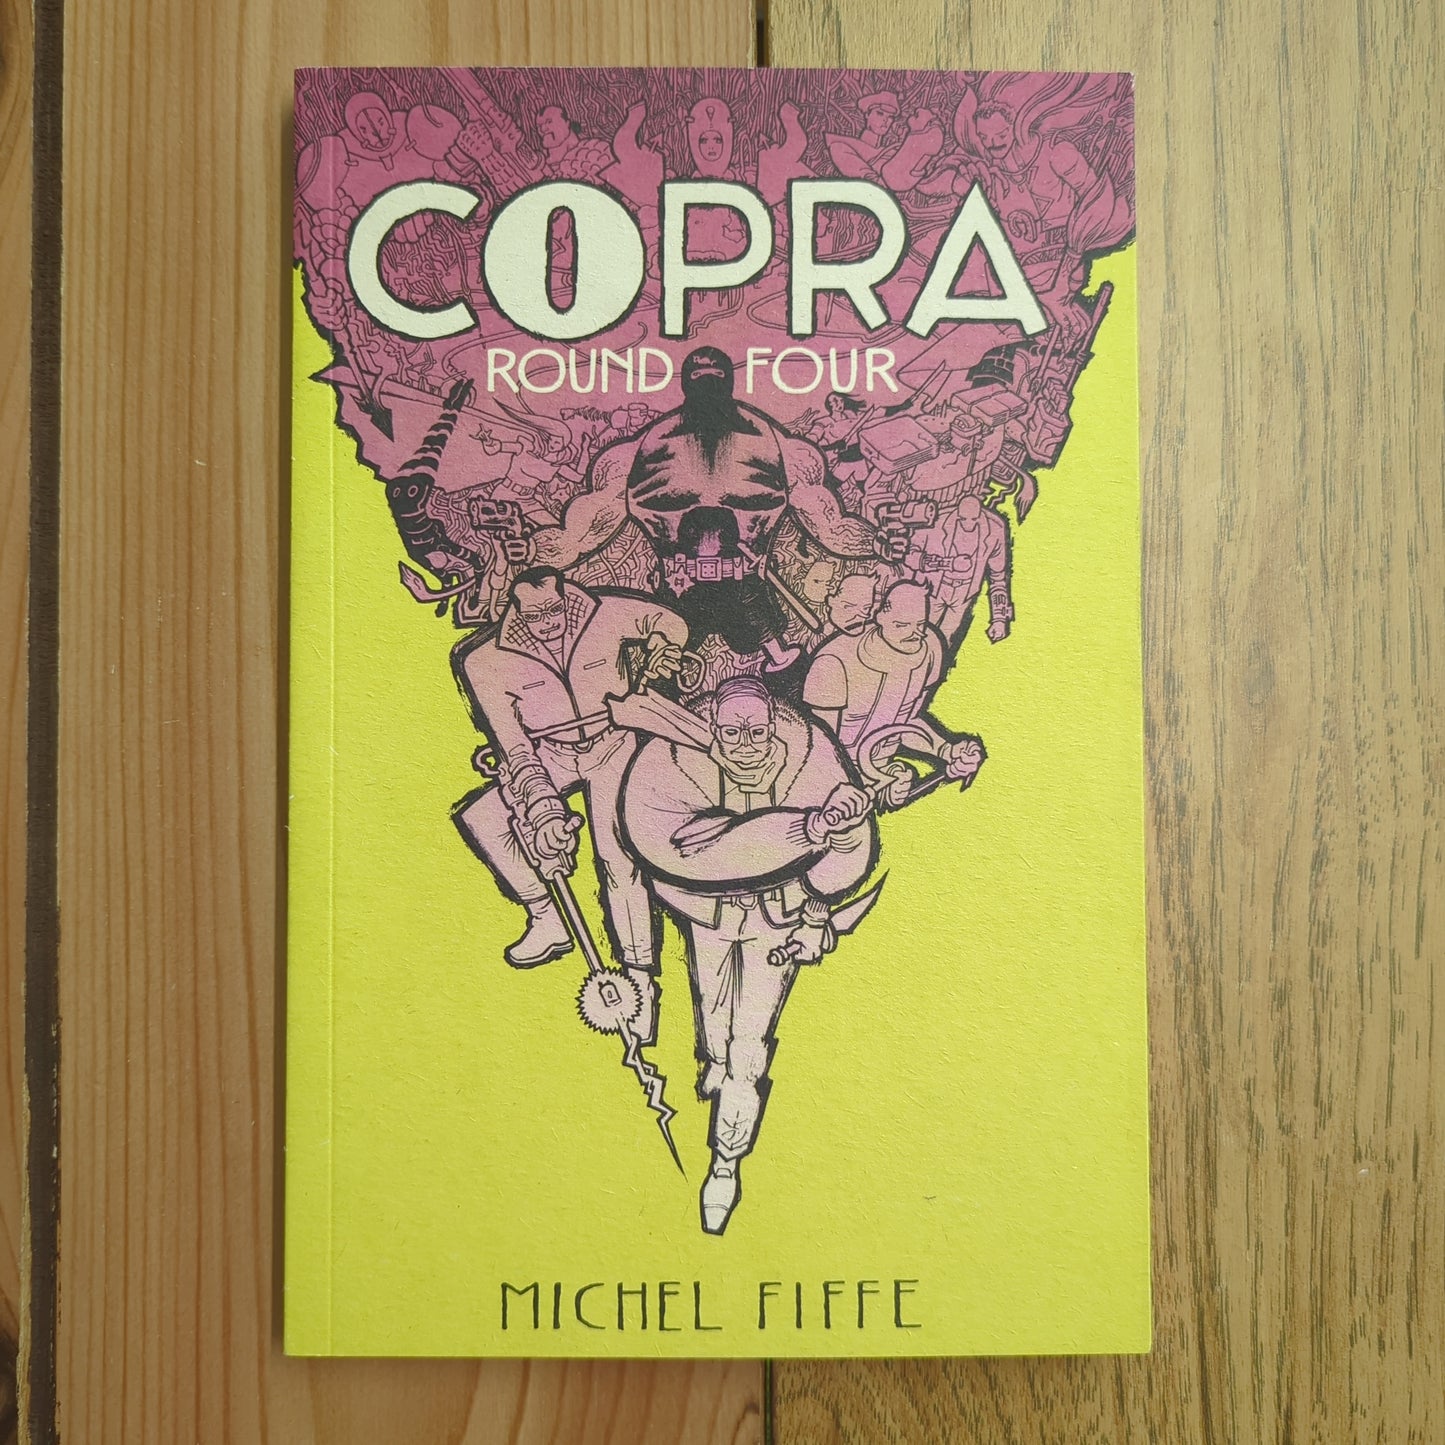 Copra, Round 4